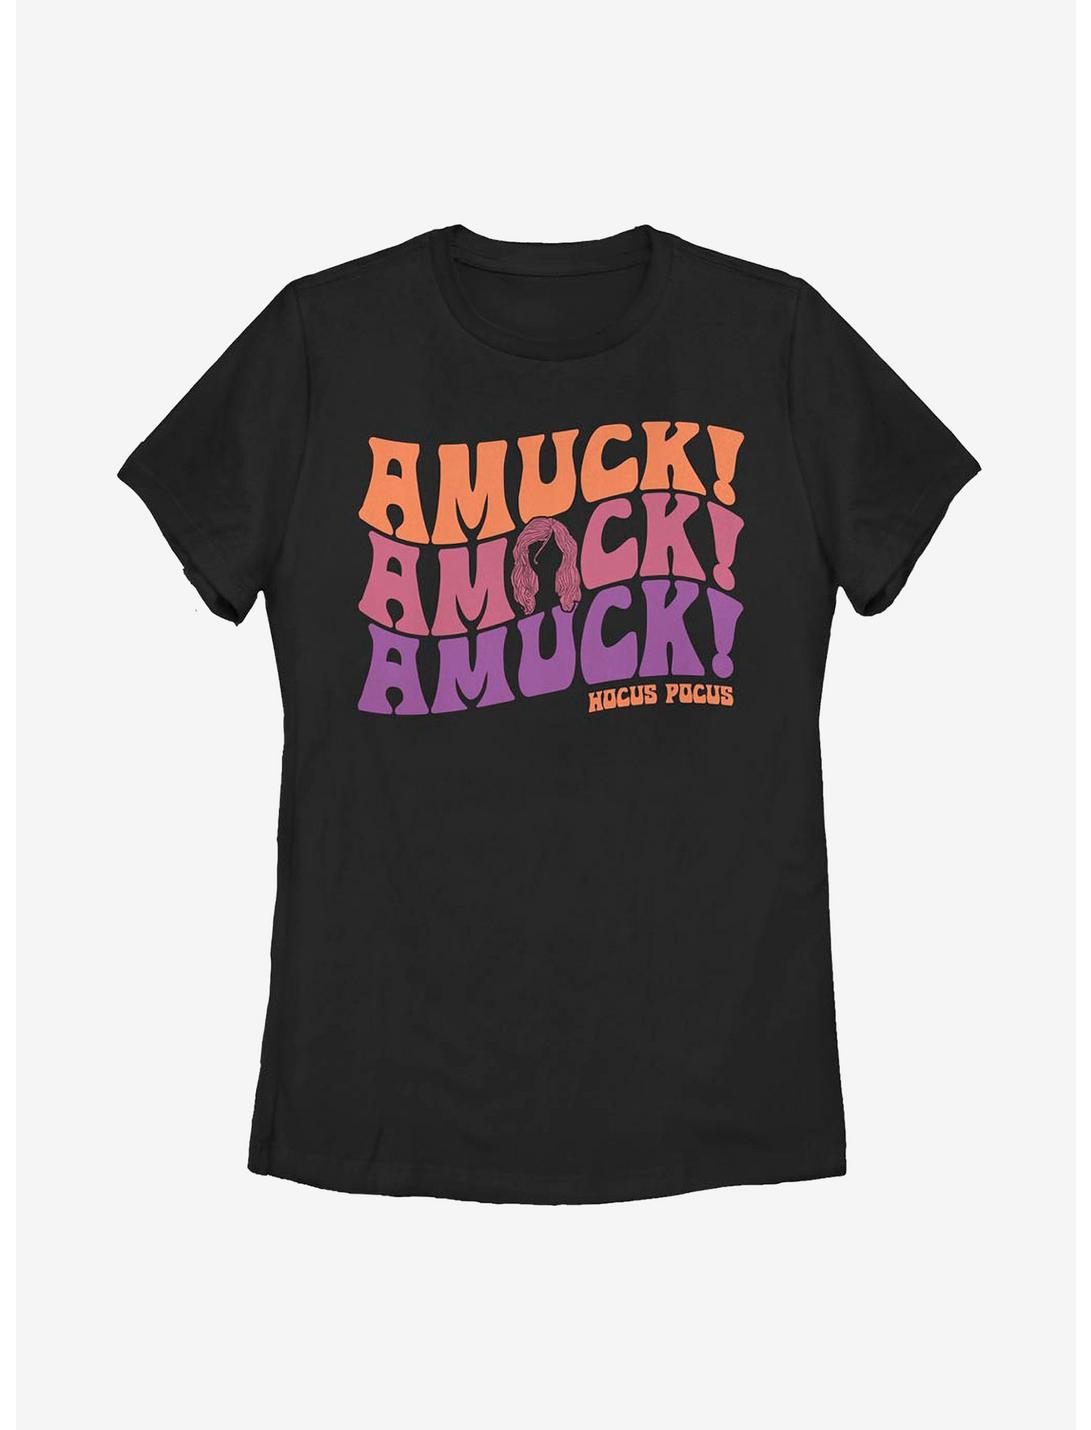 Disney Hocus Pocus Amuck Amuck Amuck Womens T-Shirt, BLACK, hi-res